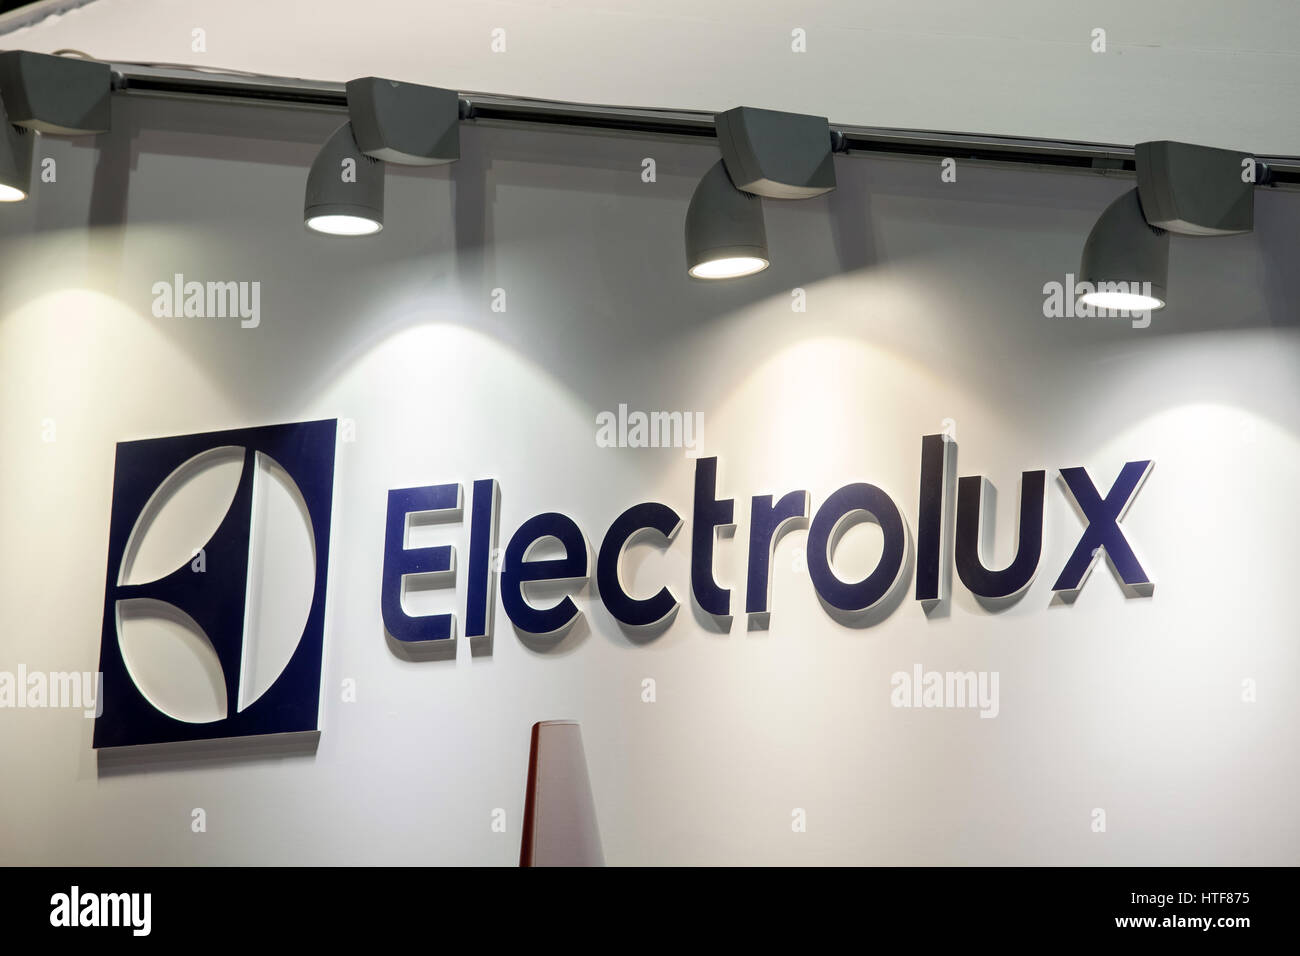 Moscou, Russie - Février 2016 : AB Electrolux logo de l'entreprise sur le mur. Electrolux est une multinationale suédoise accueil fabricant d'appareils ménagers Banque D'Images